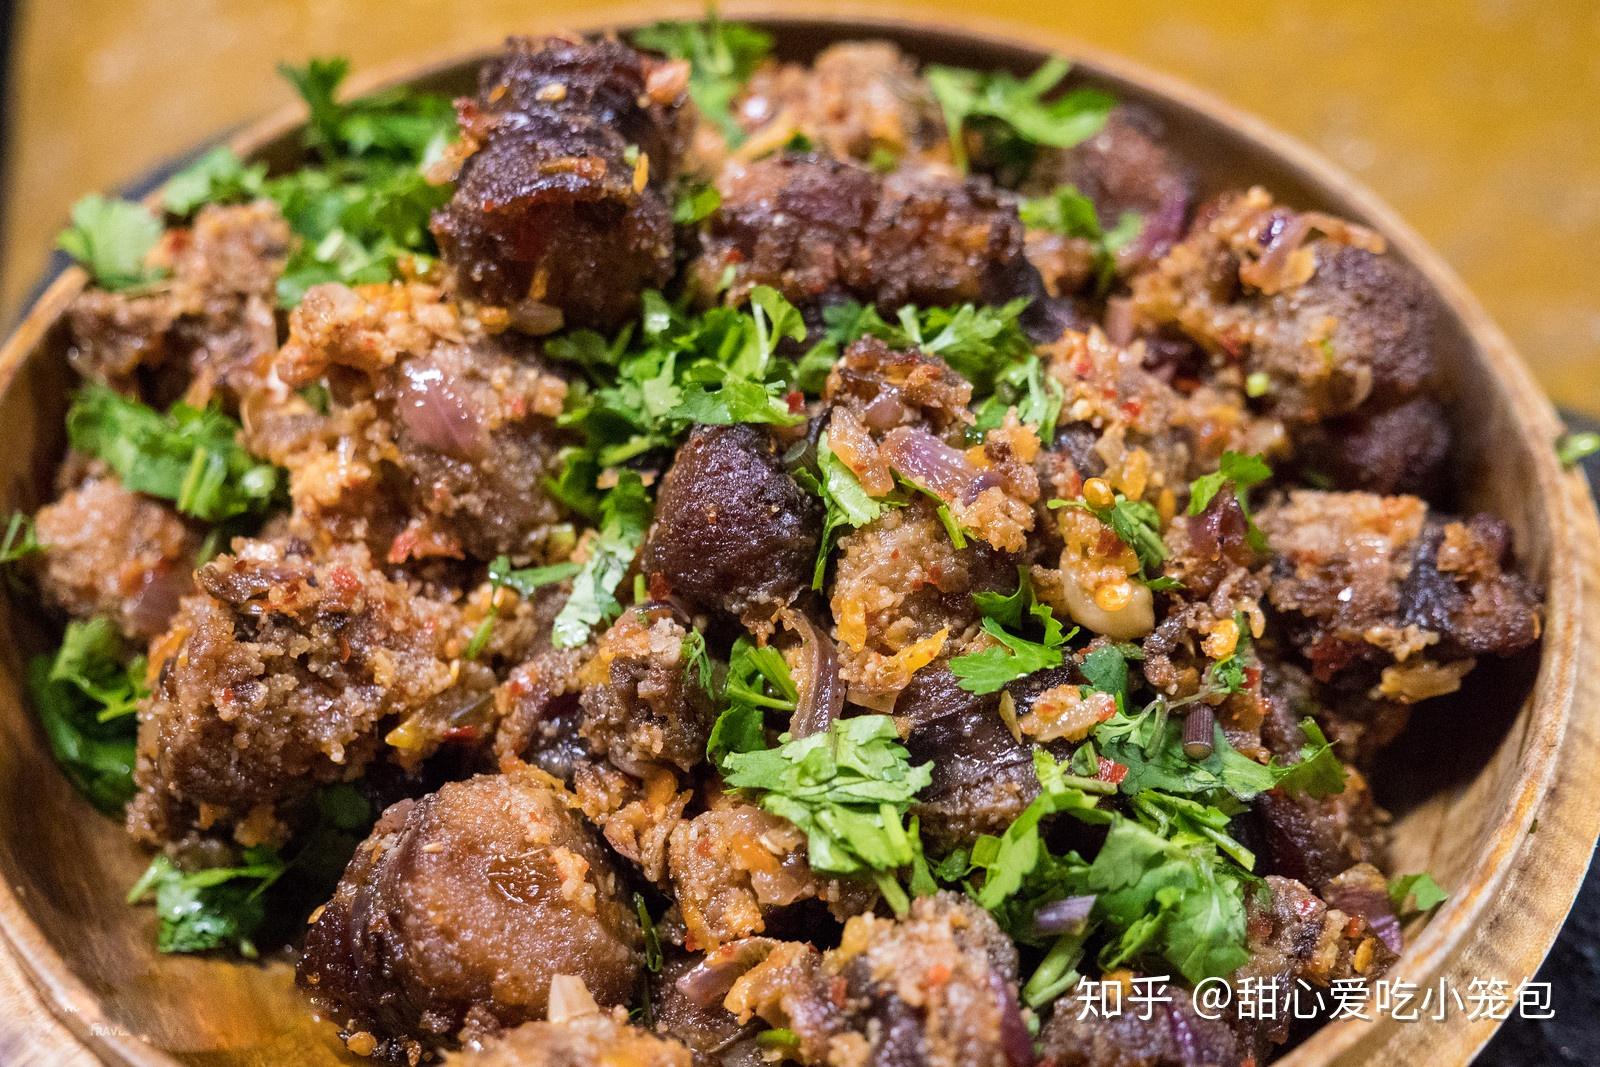 不丹炖鸡 jasha maru这是用辣椒,香菜和姜炖出来的鸡肉,不丹菜式喜欢